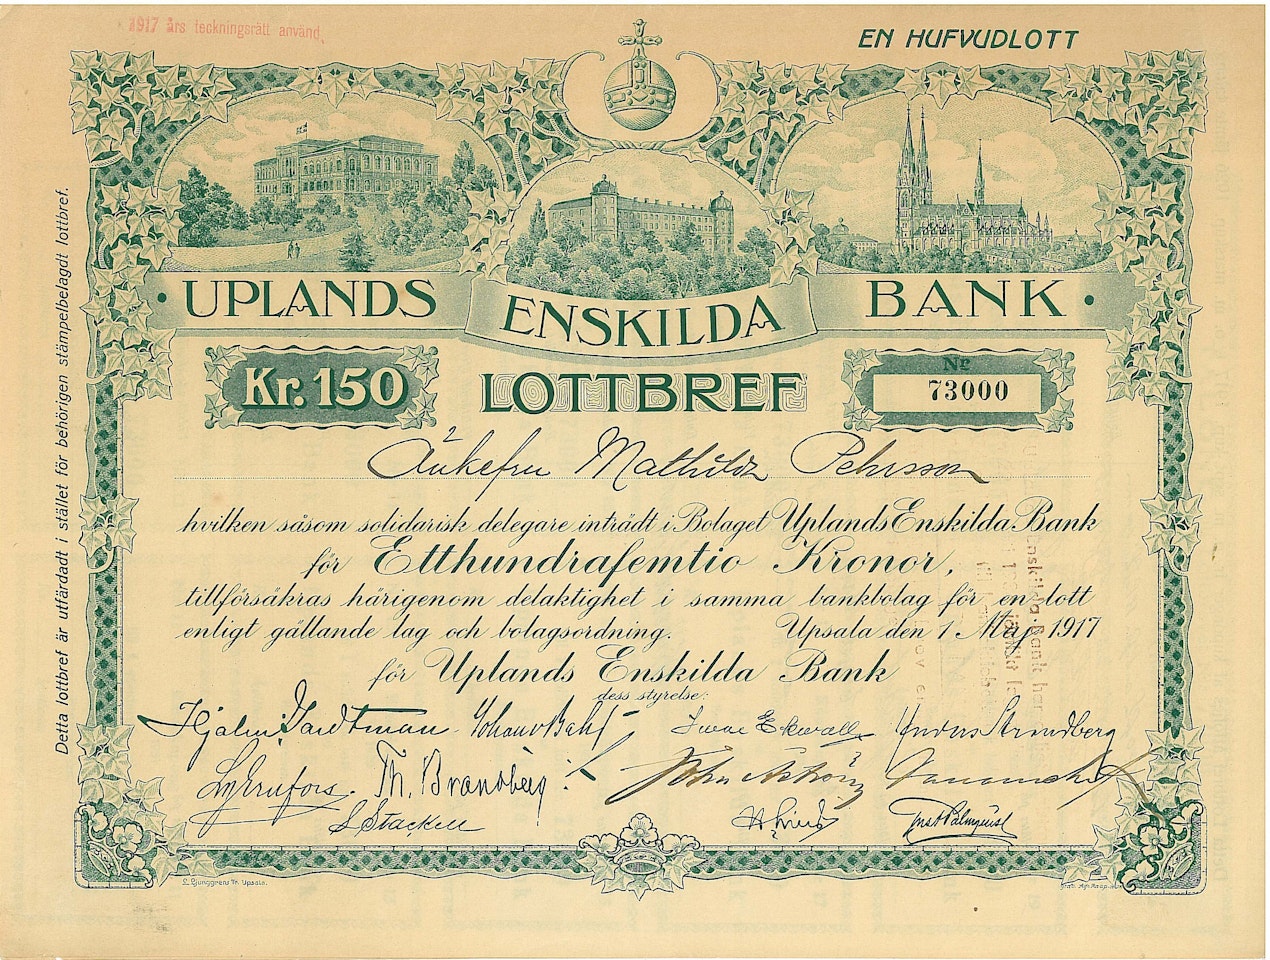 Uplands Enskilda Bank, 1917